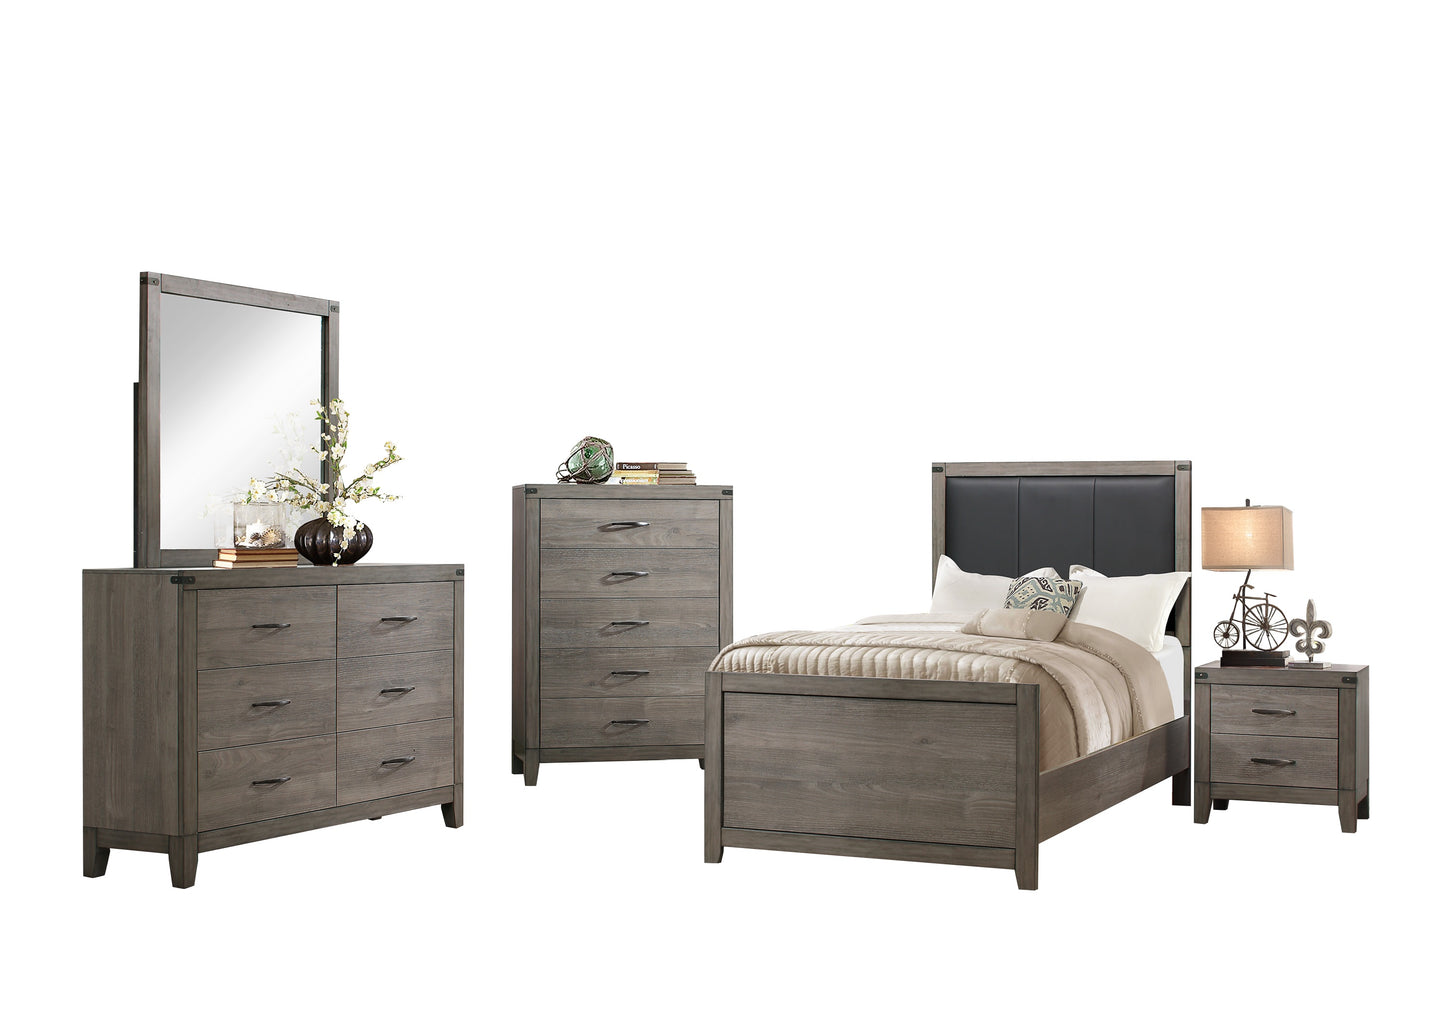 Walen Industrial 5PC Bedroom Set Full Bed, Dresser, Mirror, Nightstand, Chest in Grey